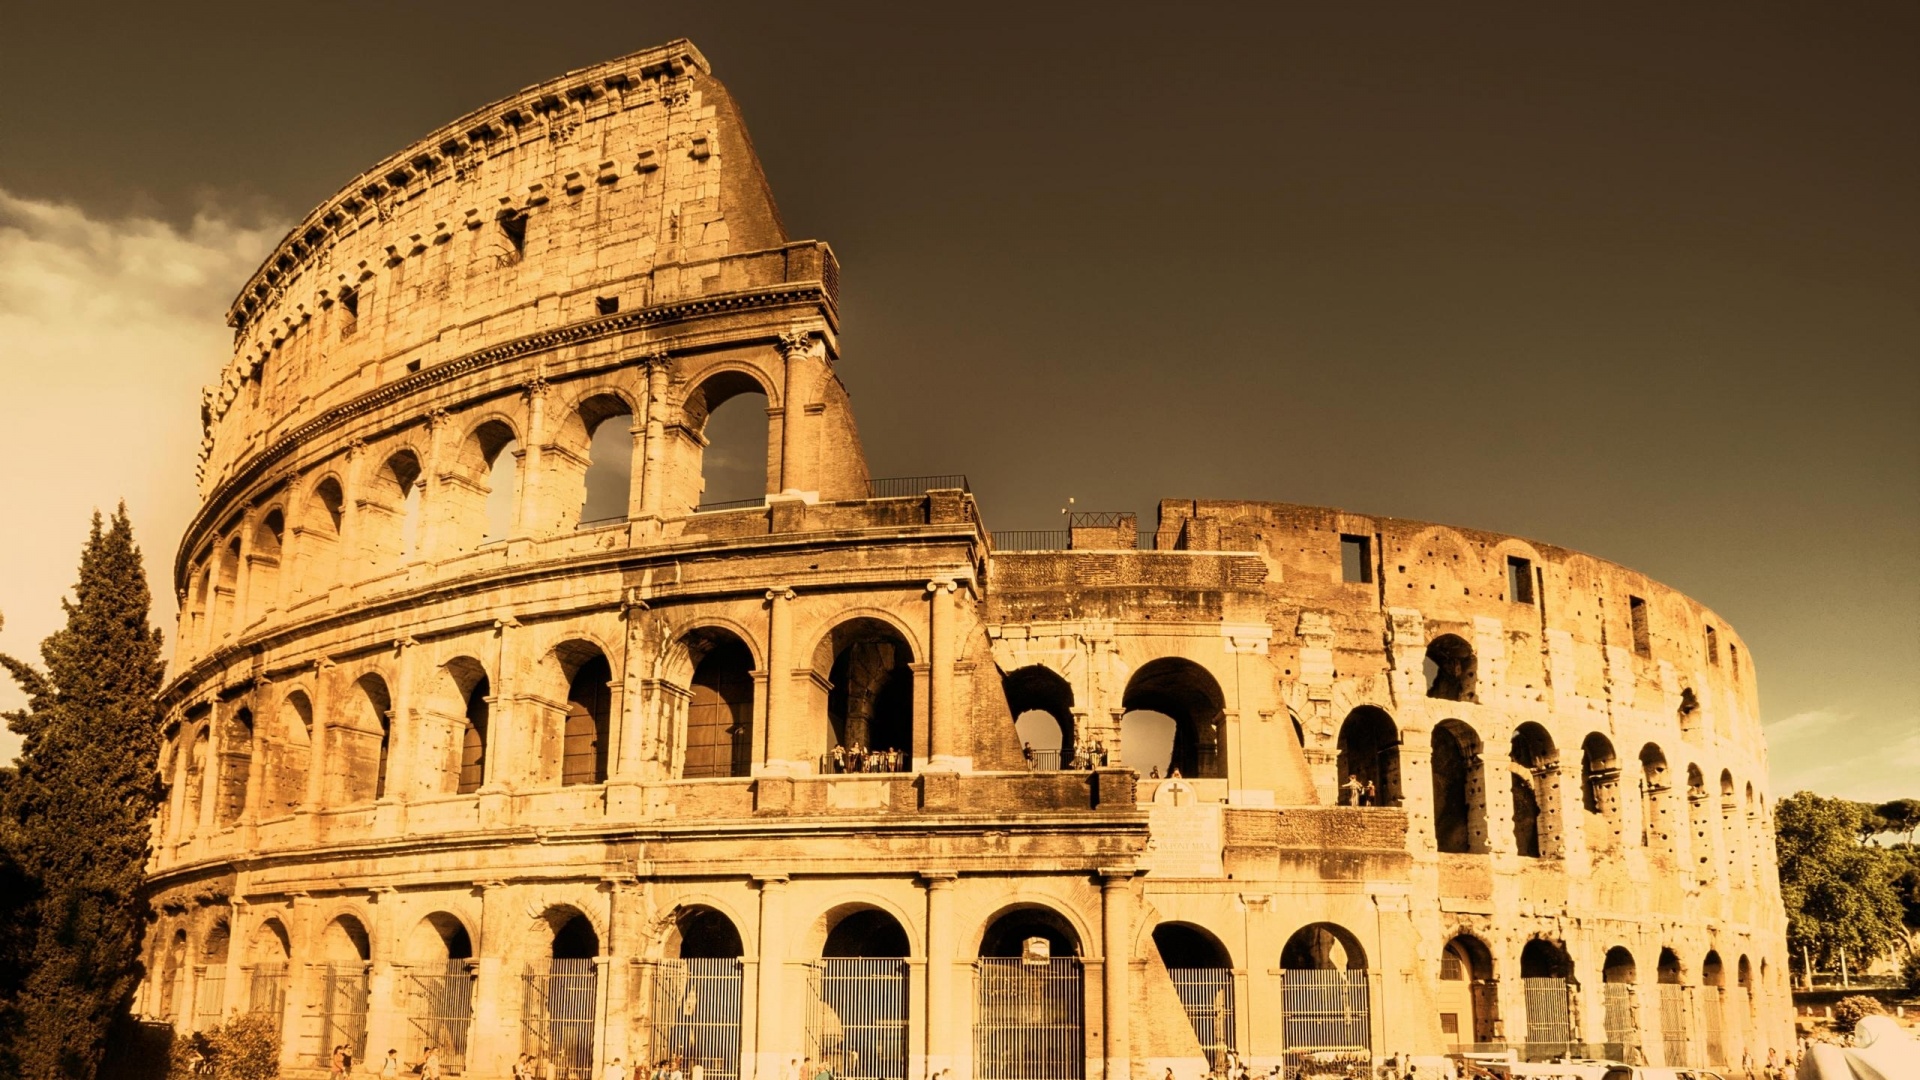 Colosseum Monuments Ancient Buildings